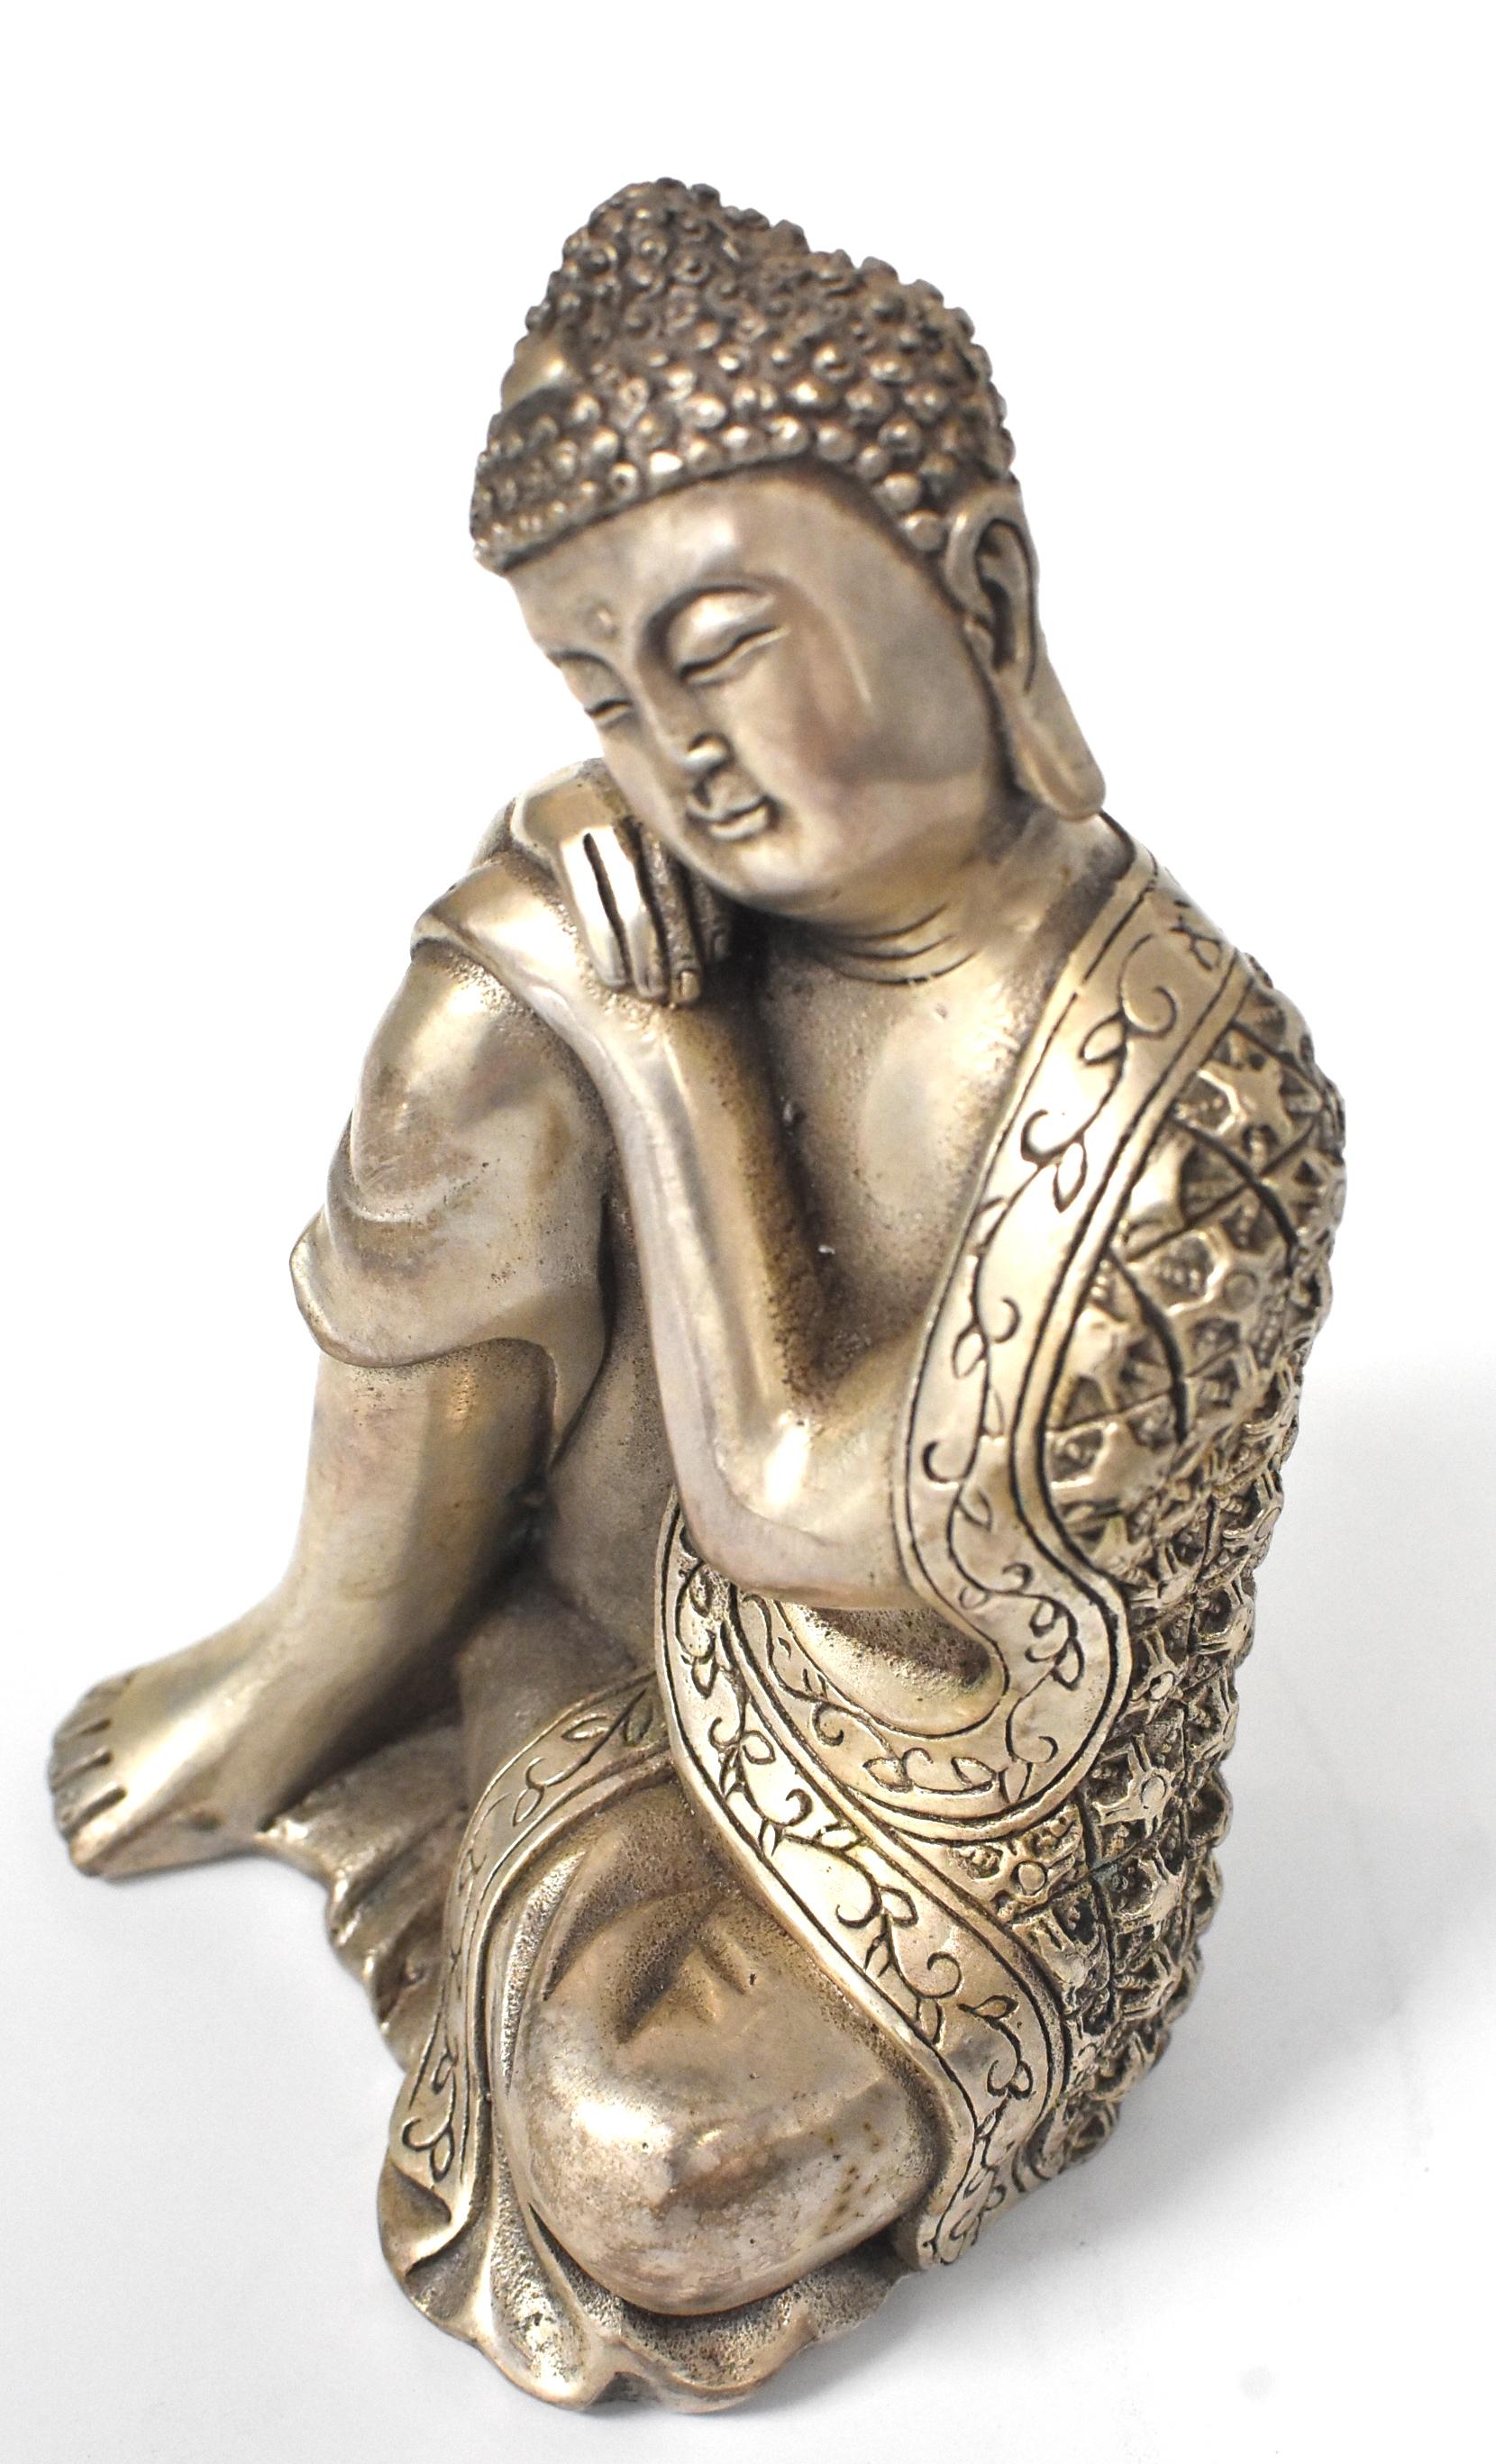 Contemporary Silvered Brass Buddha Statue, a Thinking Buddha